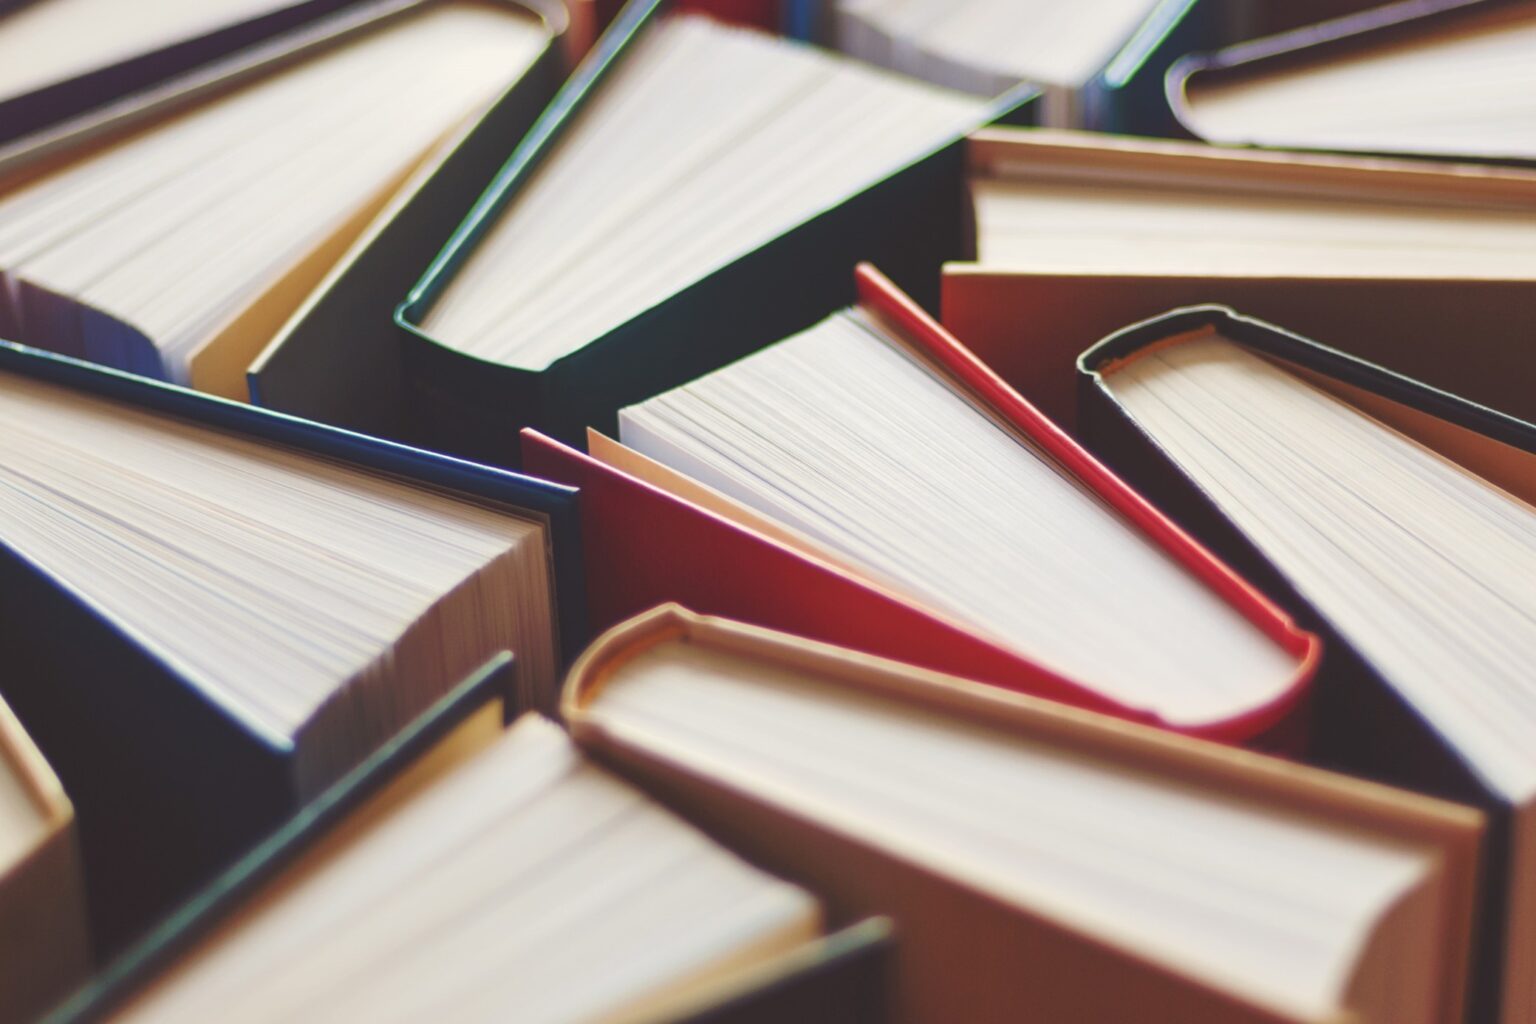 Merkwaarde boekensector gedaald met 16 procent door corona en vergrijzing